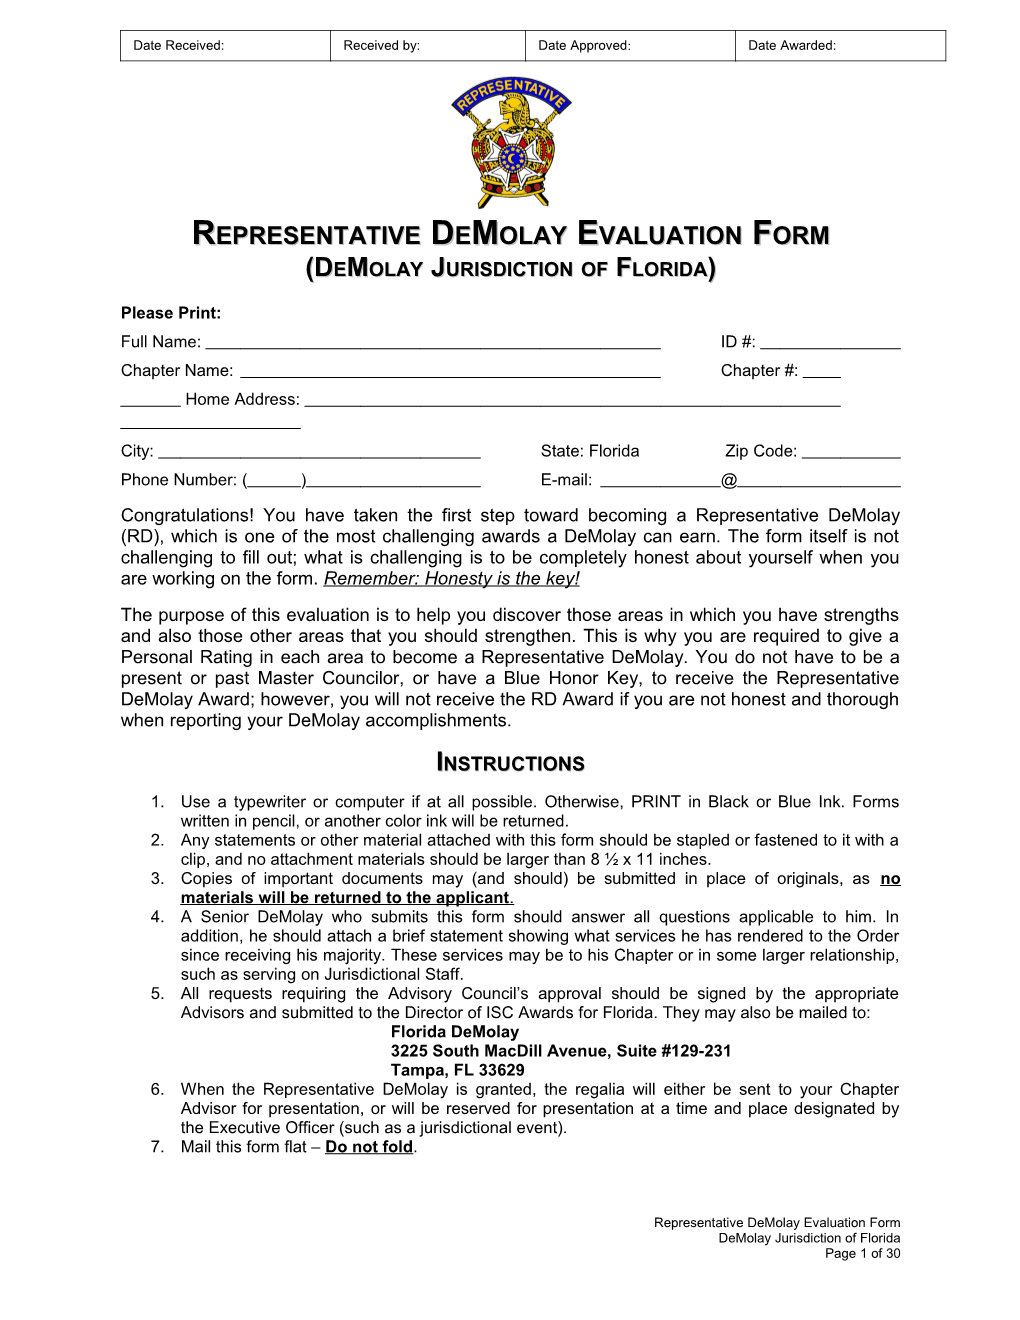 Representative Demolay Evaluation Form